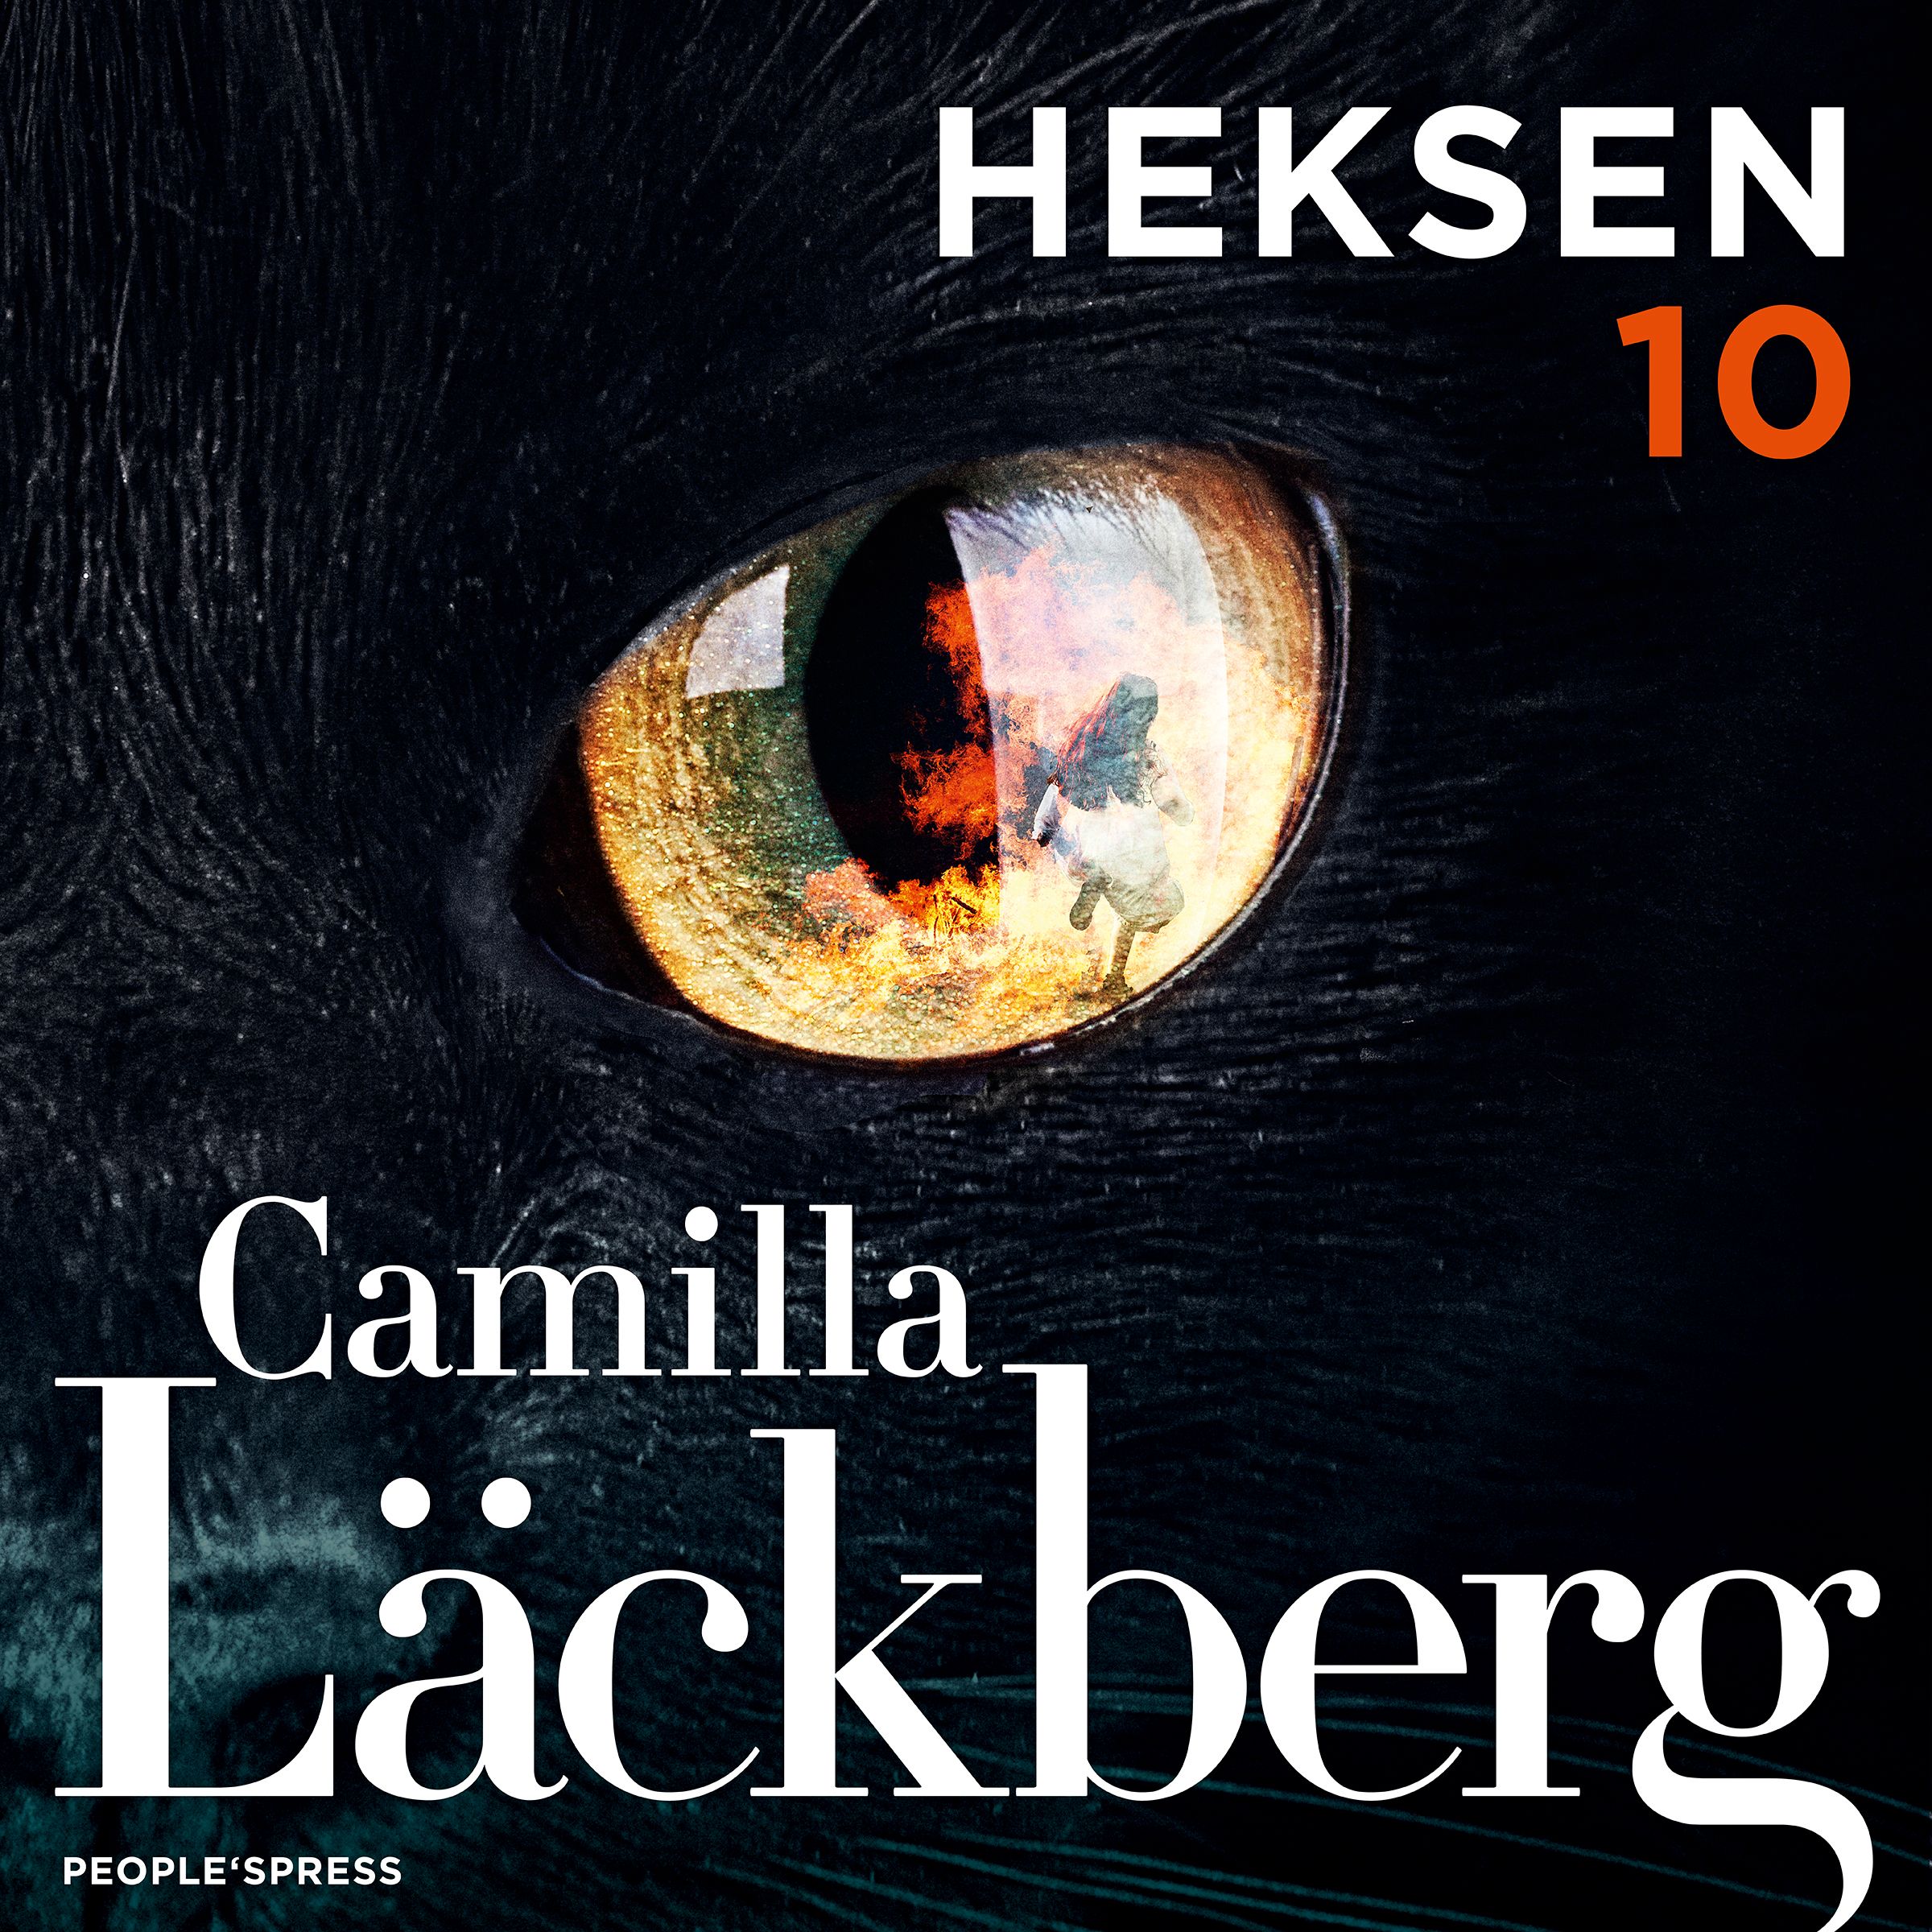 Heksen, ljudbok av Camilla Läckberg